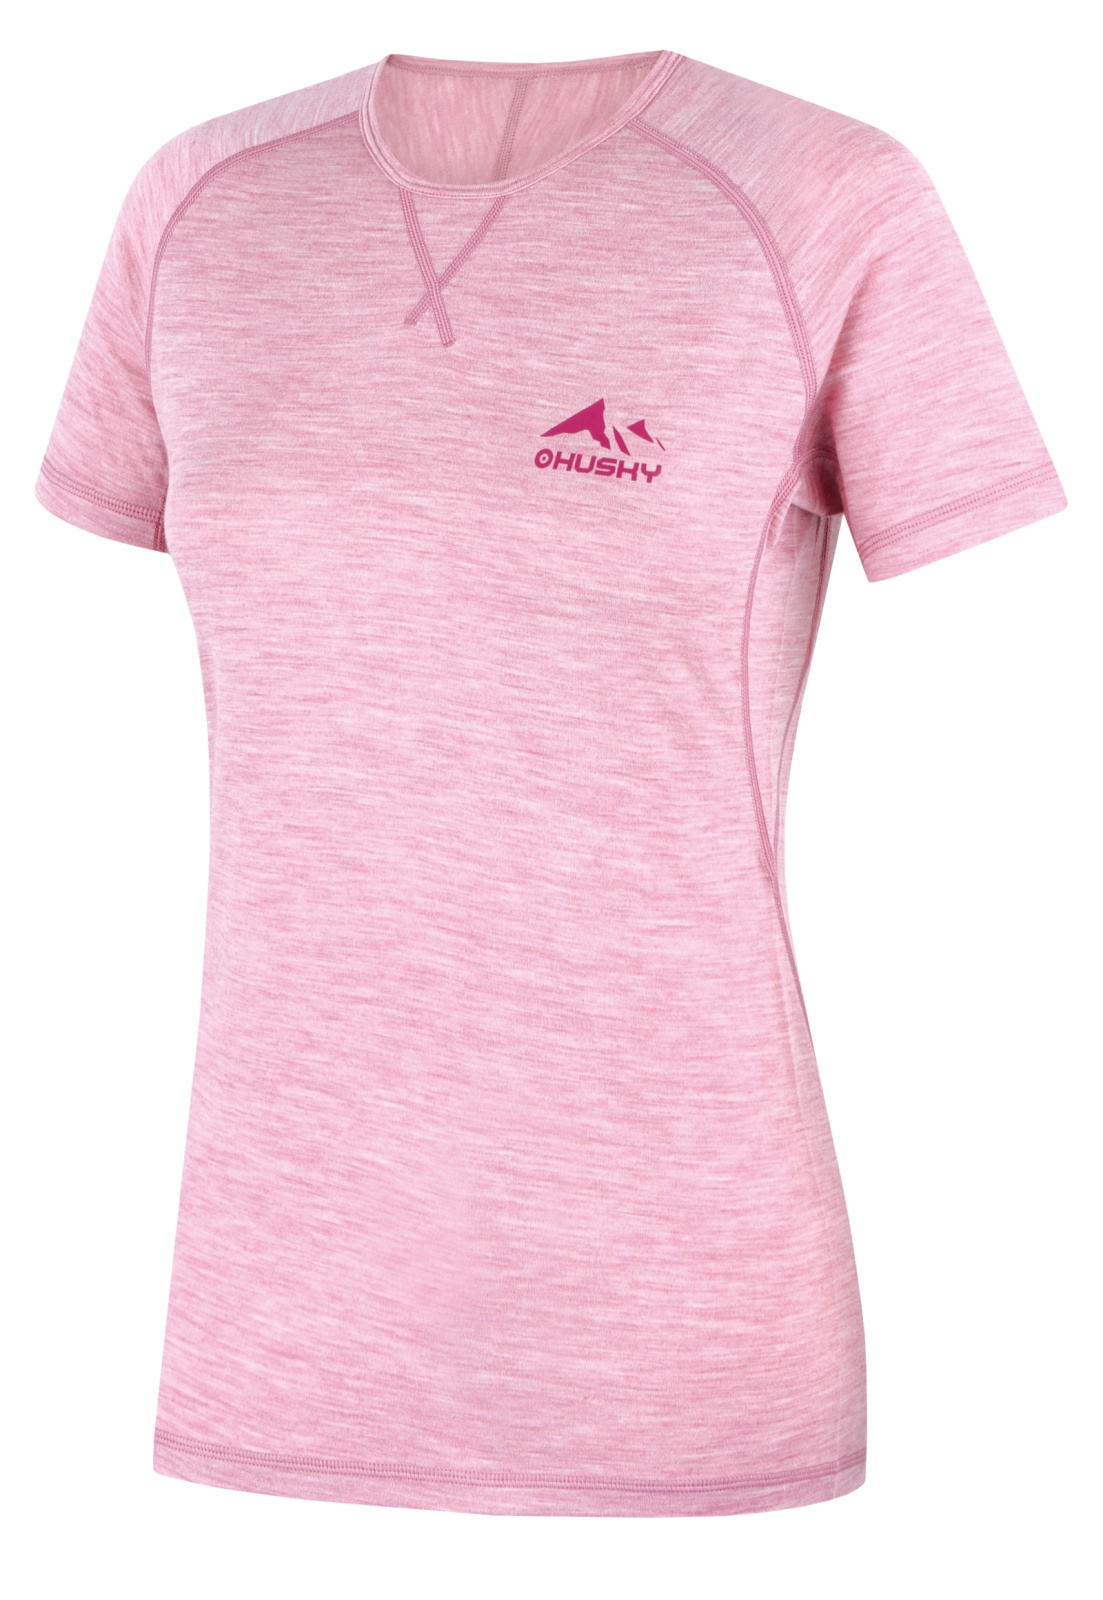 Husky Merino termoprádlo Mersa L faded pink Velikost: M dámské tričko s krátkým rukávem